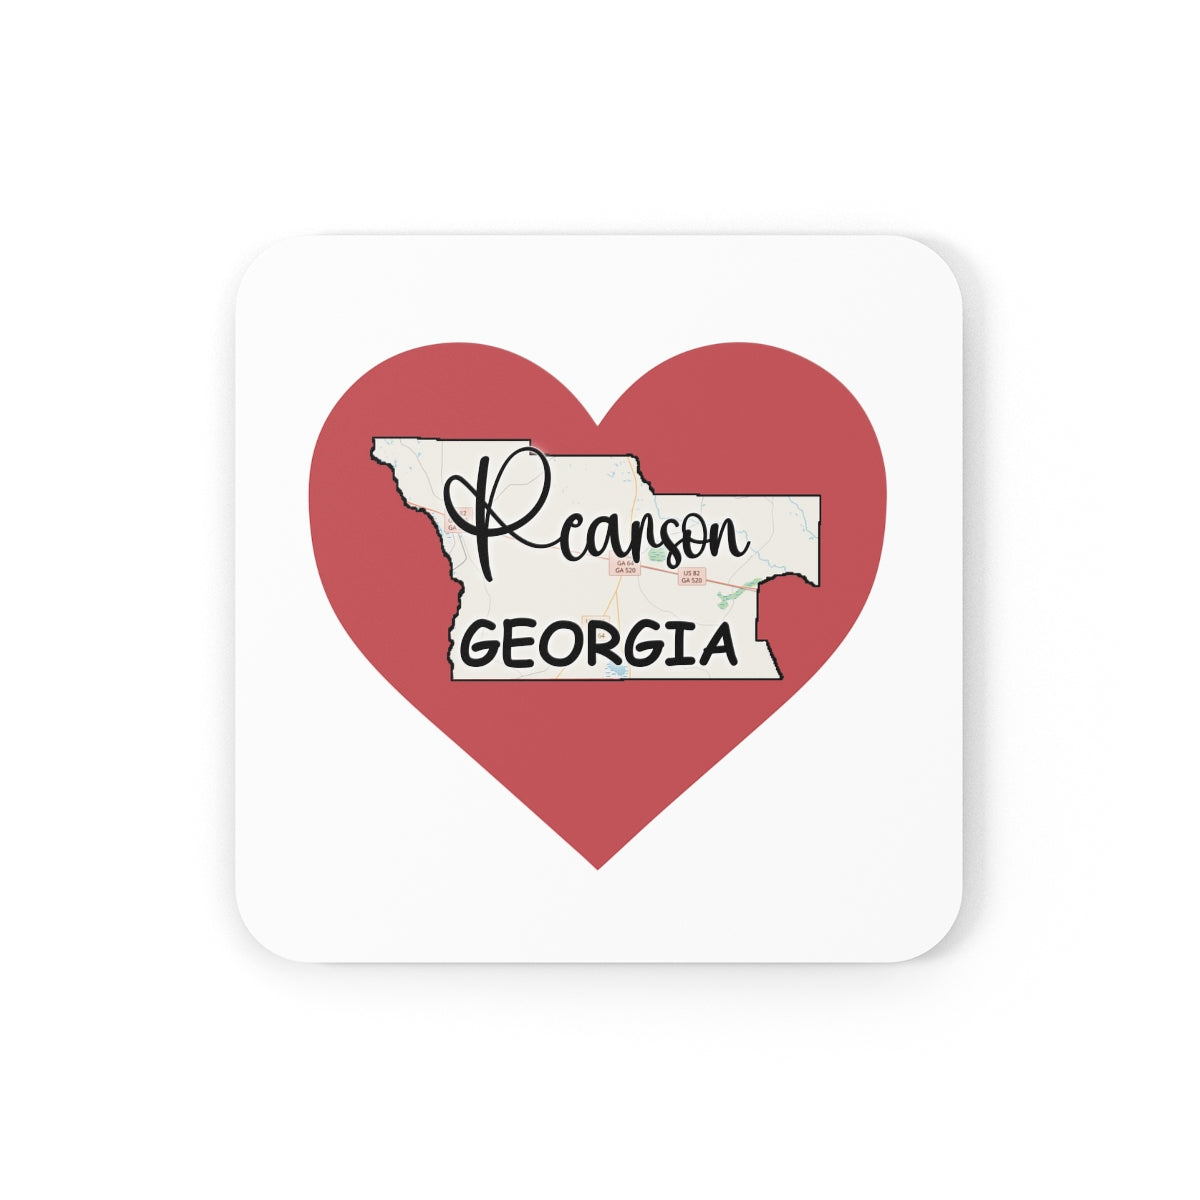 Pearson Georgia Corkwood Coaster Set